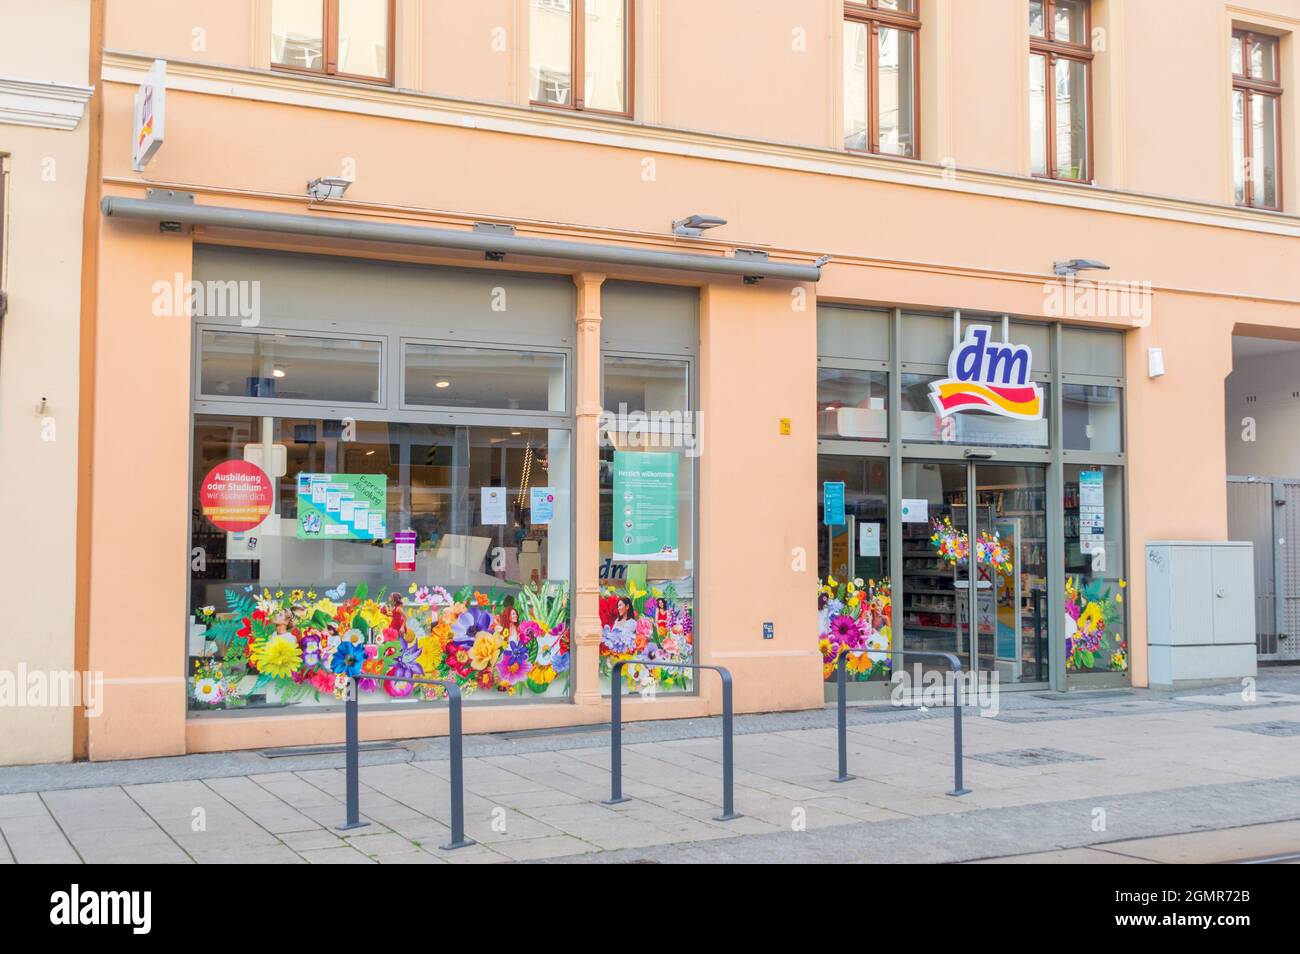 Gorlitz, Deutschland - 2. Juni 2021: dm drogerie markt Niederlassung. dm-drogerie  markt ist eine Kette von Einzelhandelsgeschäften, die Kosmetik,  Gesundheitsartikel, Hausherrenartikel anbietet Stockfotografie - Alamy